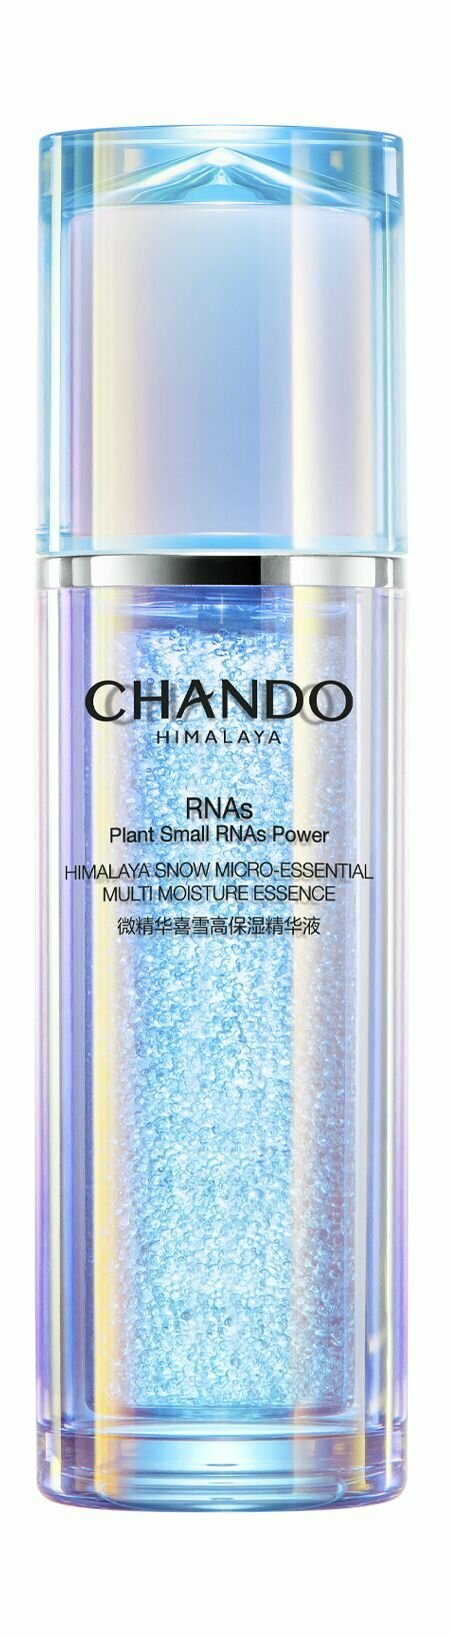 Увлажняющая эссенция для лица с экстрактом гималайского укропа / Chando Himalaya Plants Small RNAs Power Essence